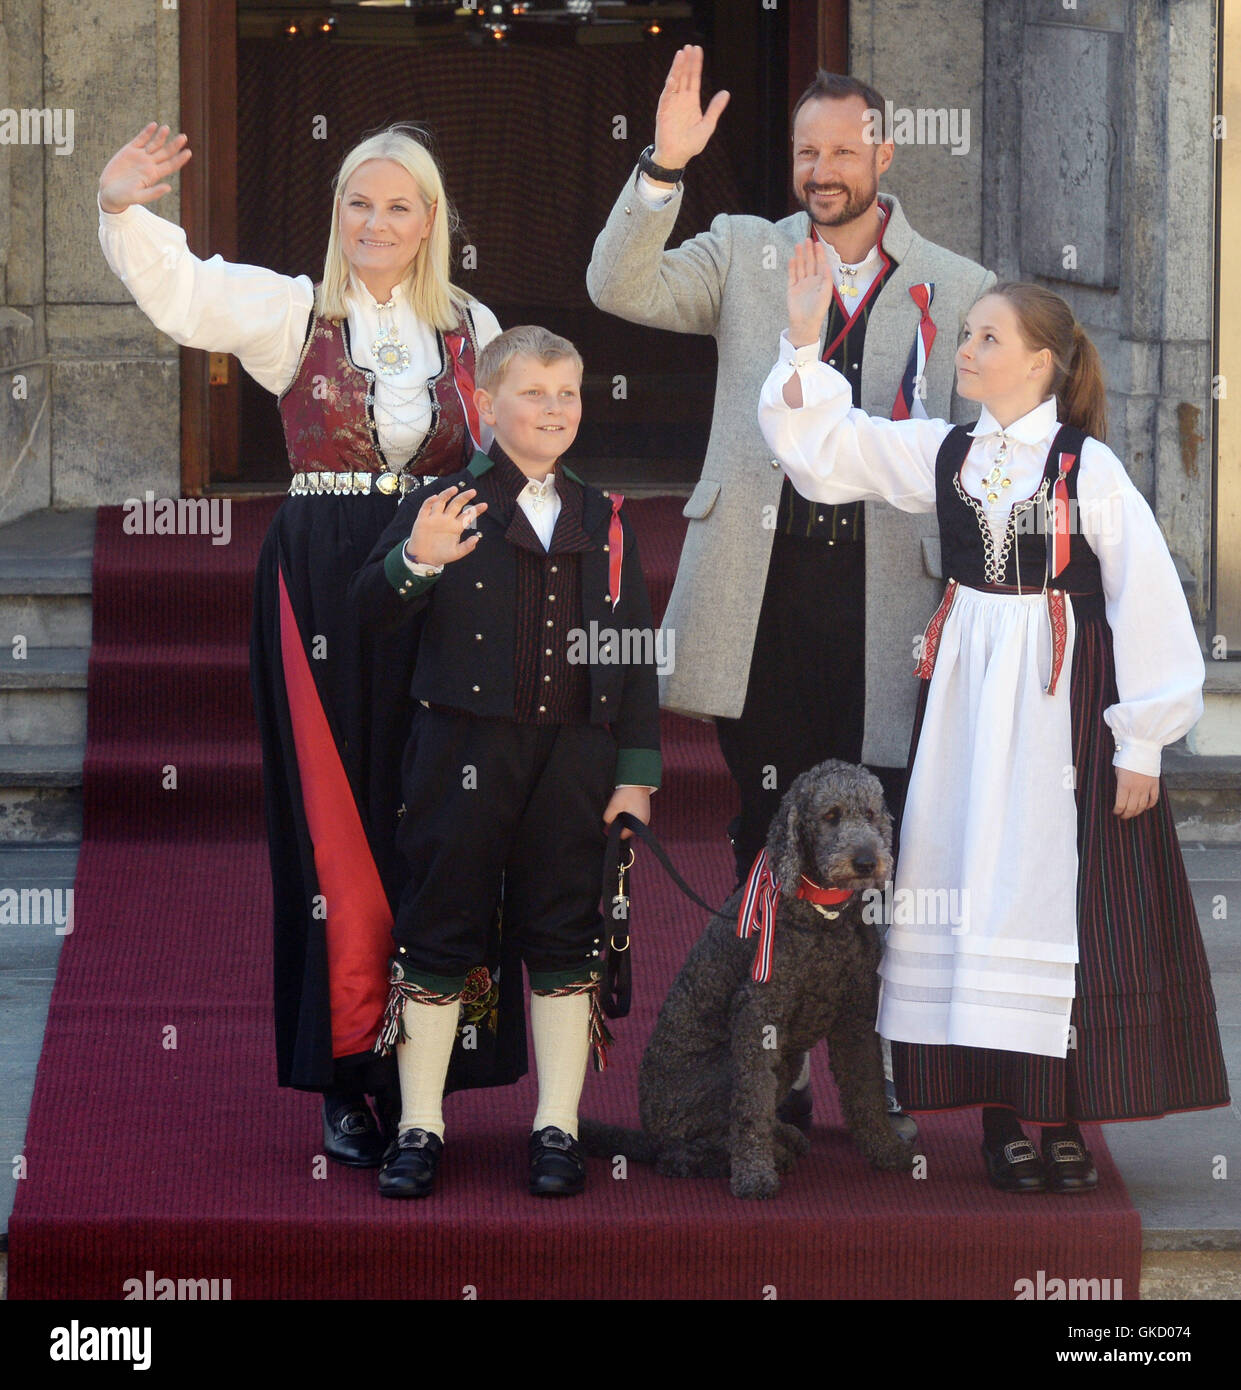 Los Royals Celebran Día Nacional de Noruega en la residencia Real de Noruega en Oslo Skaugum Featuring: Crown Princess Mette- Marit, el Príncipe Heredero Haakon, la Princesa Ingrid Alexandra, el Príncipe Sverre Magnus Dónde: Oslo, Noruega cuando: 17 de mayo de 2016 Foto de stock